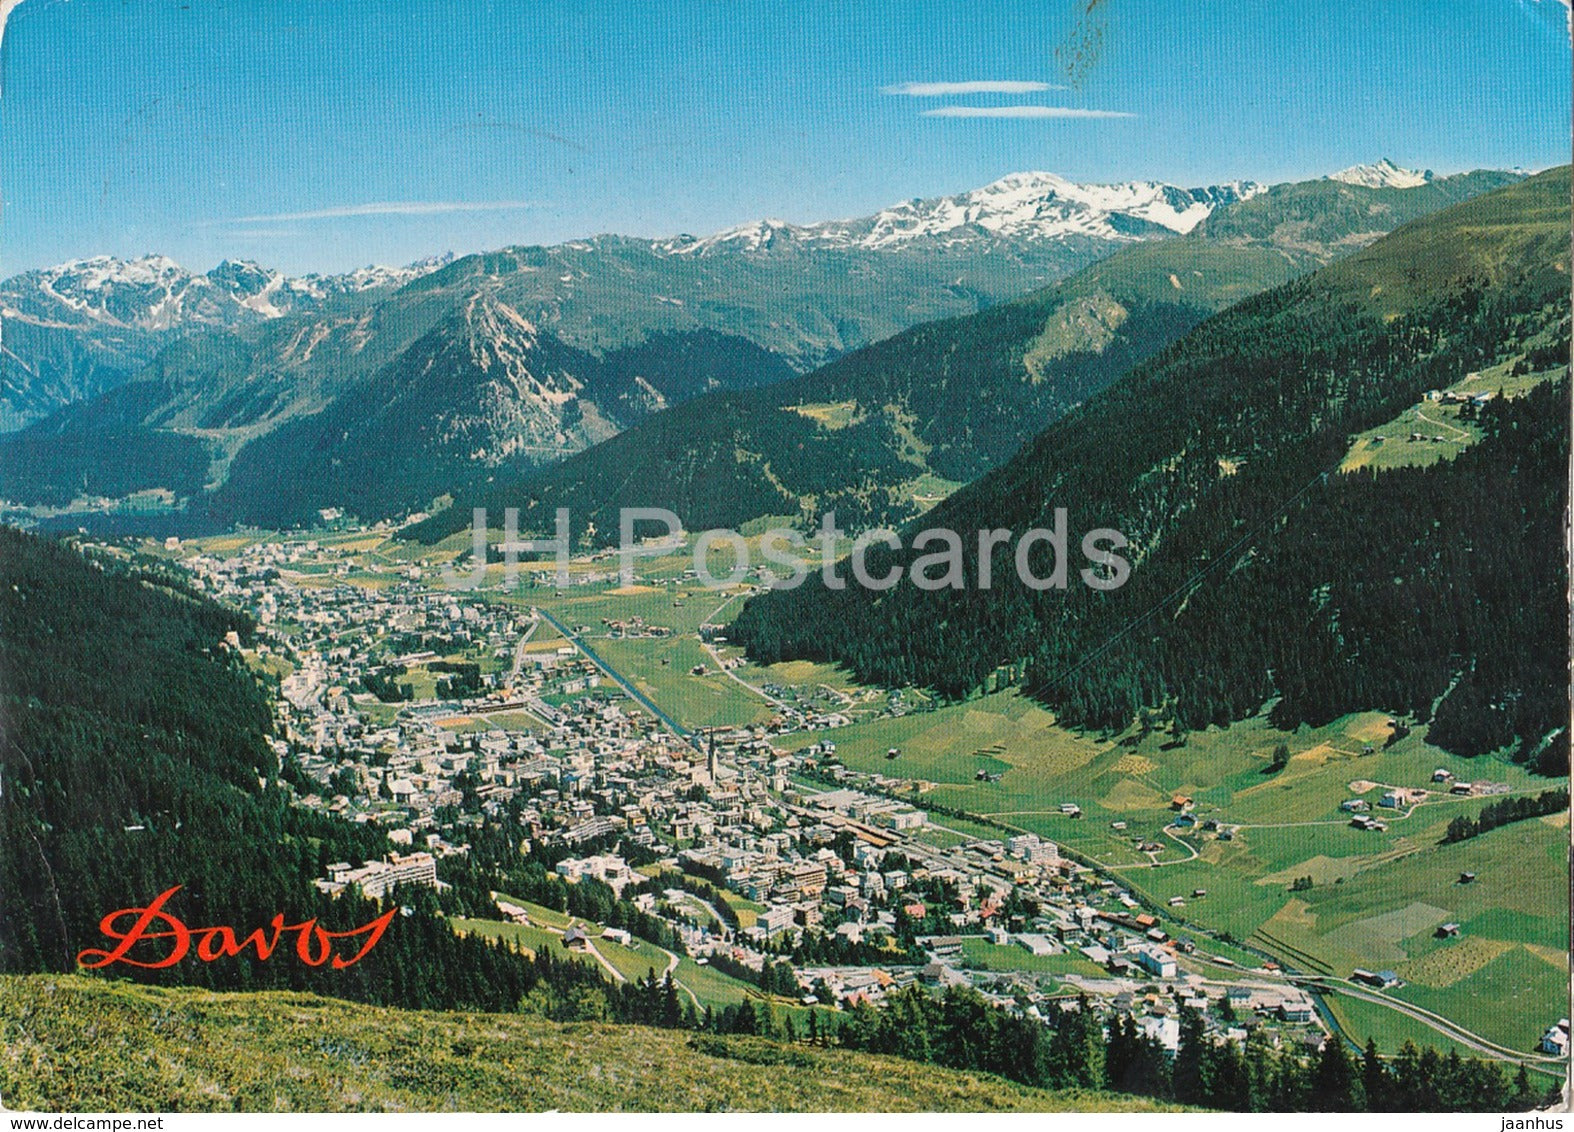 Davos 1560 m mit Rhatikonkette Pischahorn und Ischalp - 101 - 1968 - Switzerland - used - JH Postcards